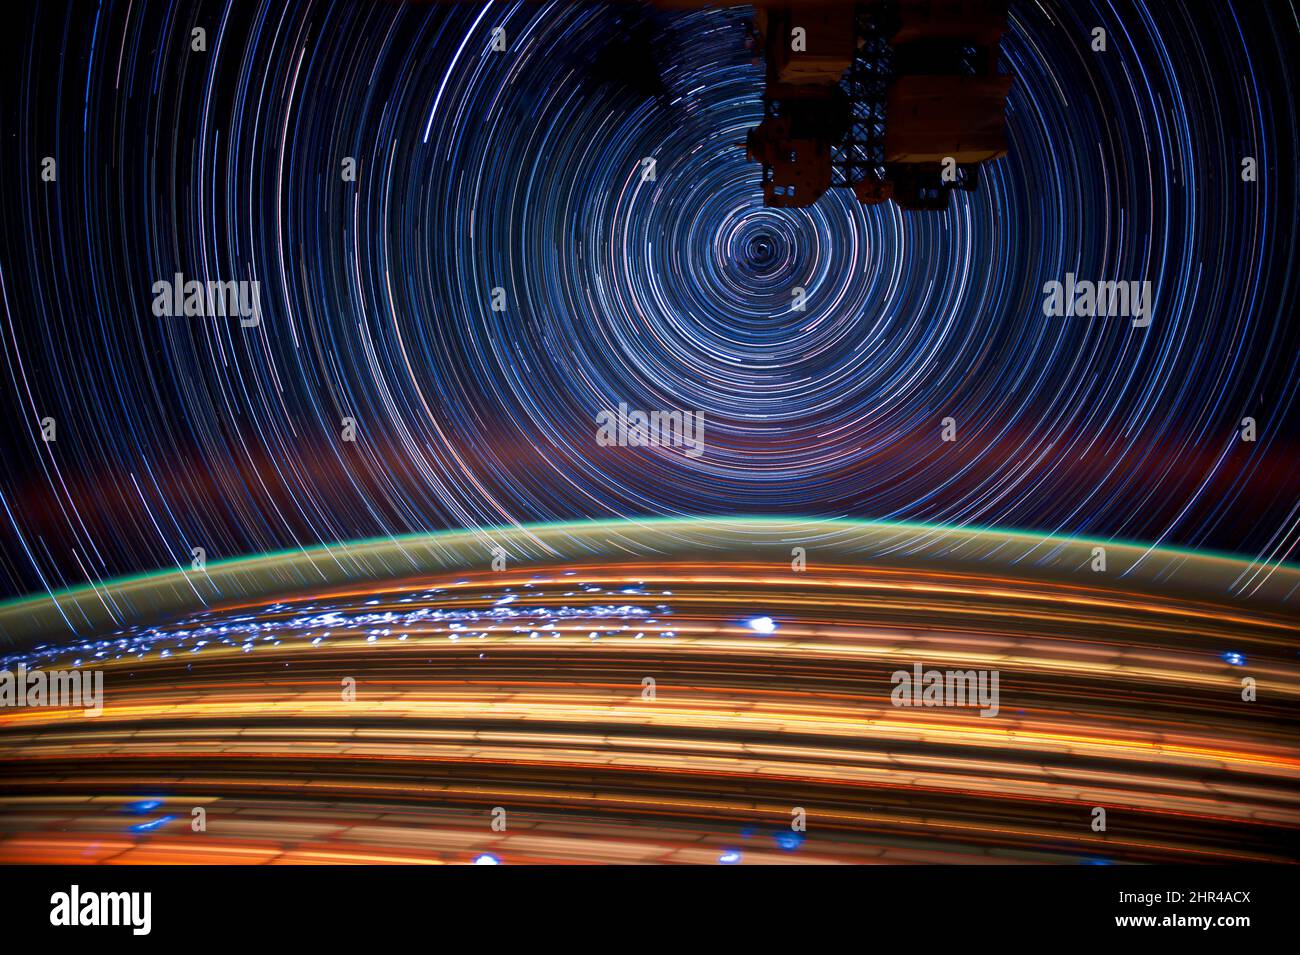 Der Erdhorizont leuchtet, Sterne im Hintergrund, Satellitenaufnahmen mit langer Belichtung aus dem Weltraum, bunte Ringe. Elemente dieses Bildes, die von der NASA eingerichtet wurden. Stockfoto